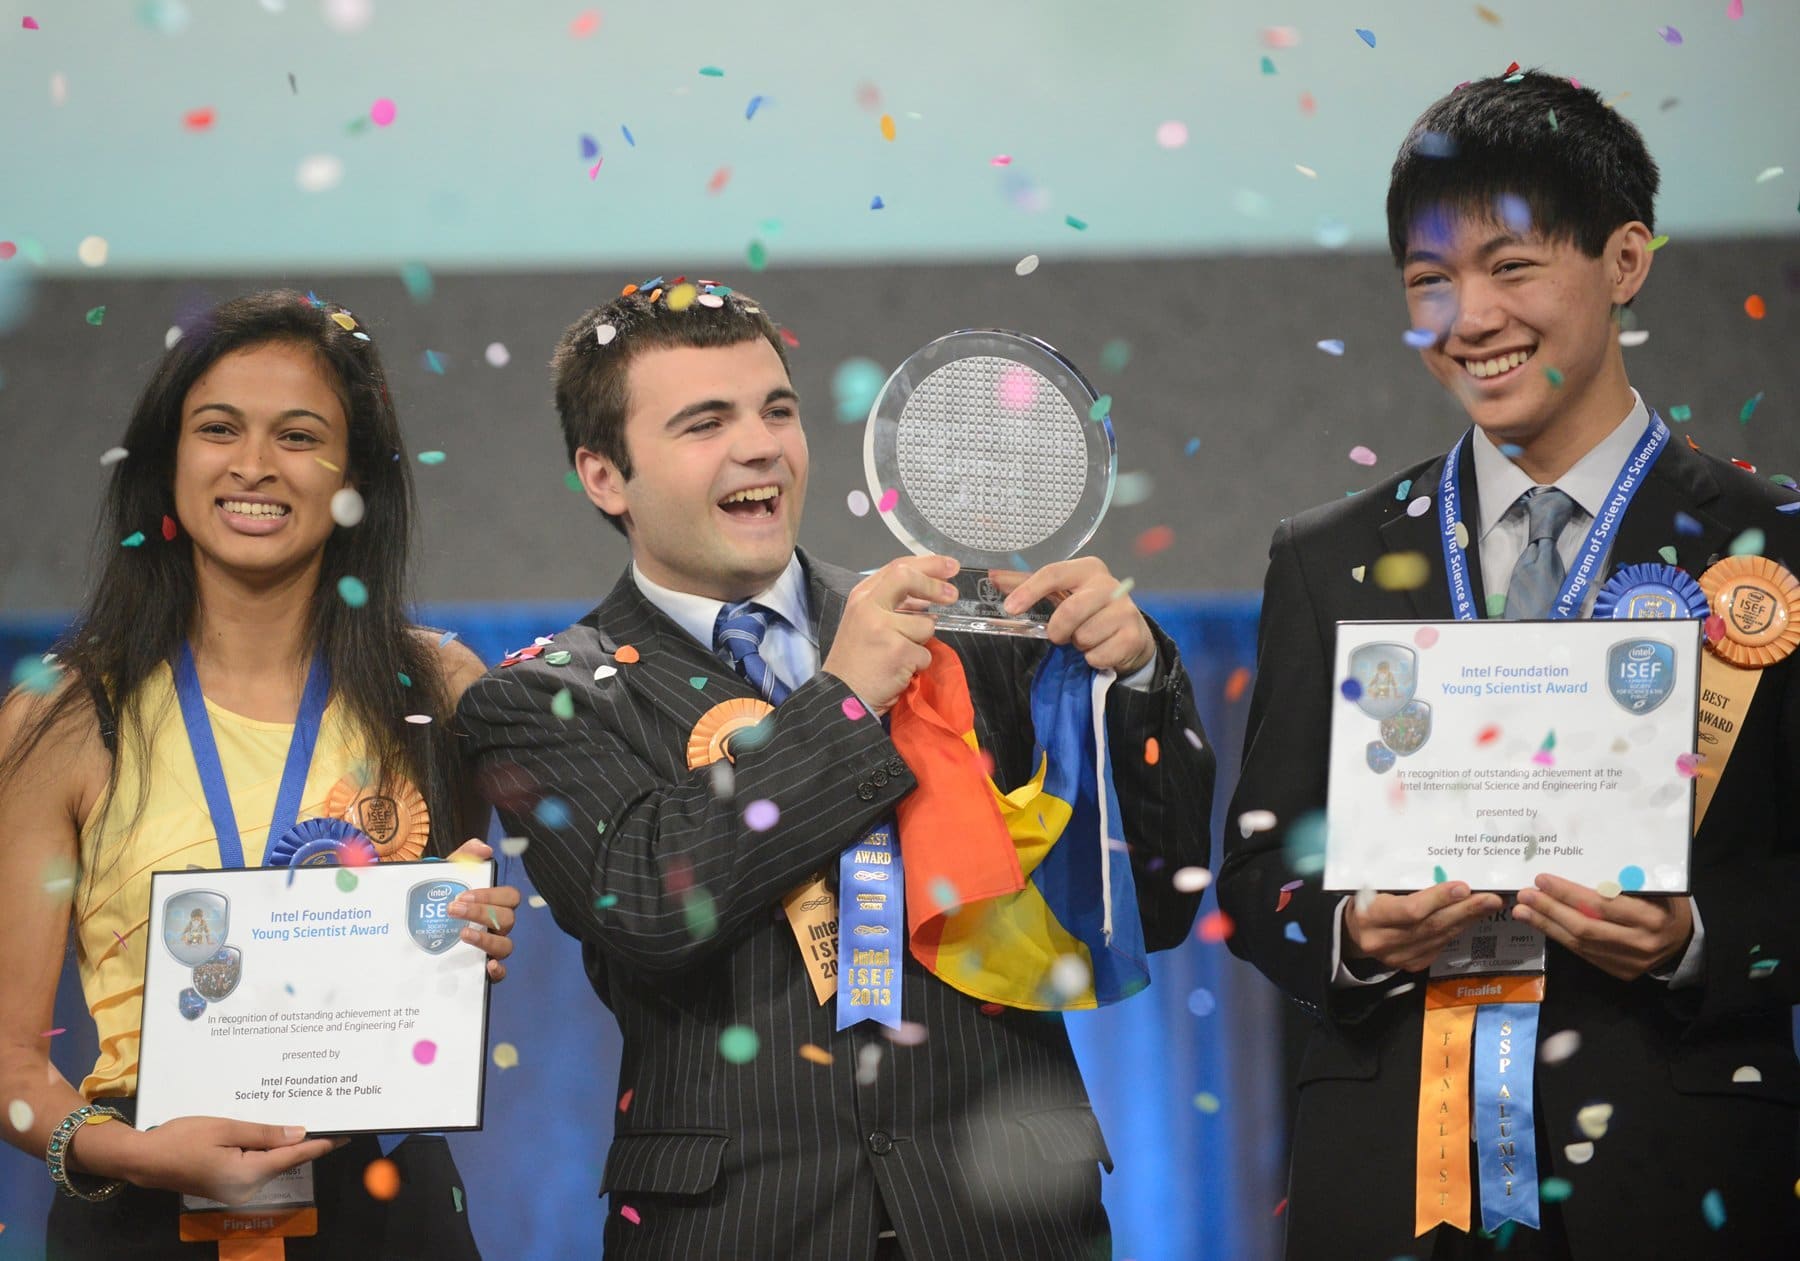 Intel ISEF 2013: Gewinner